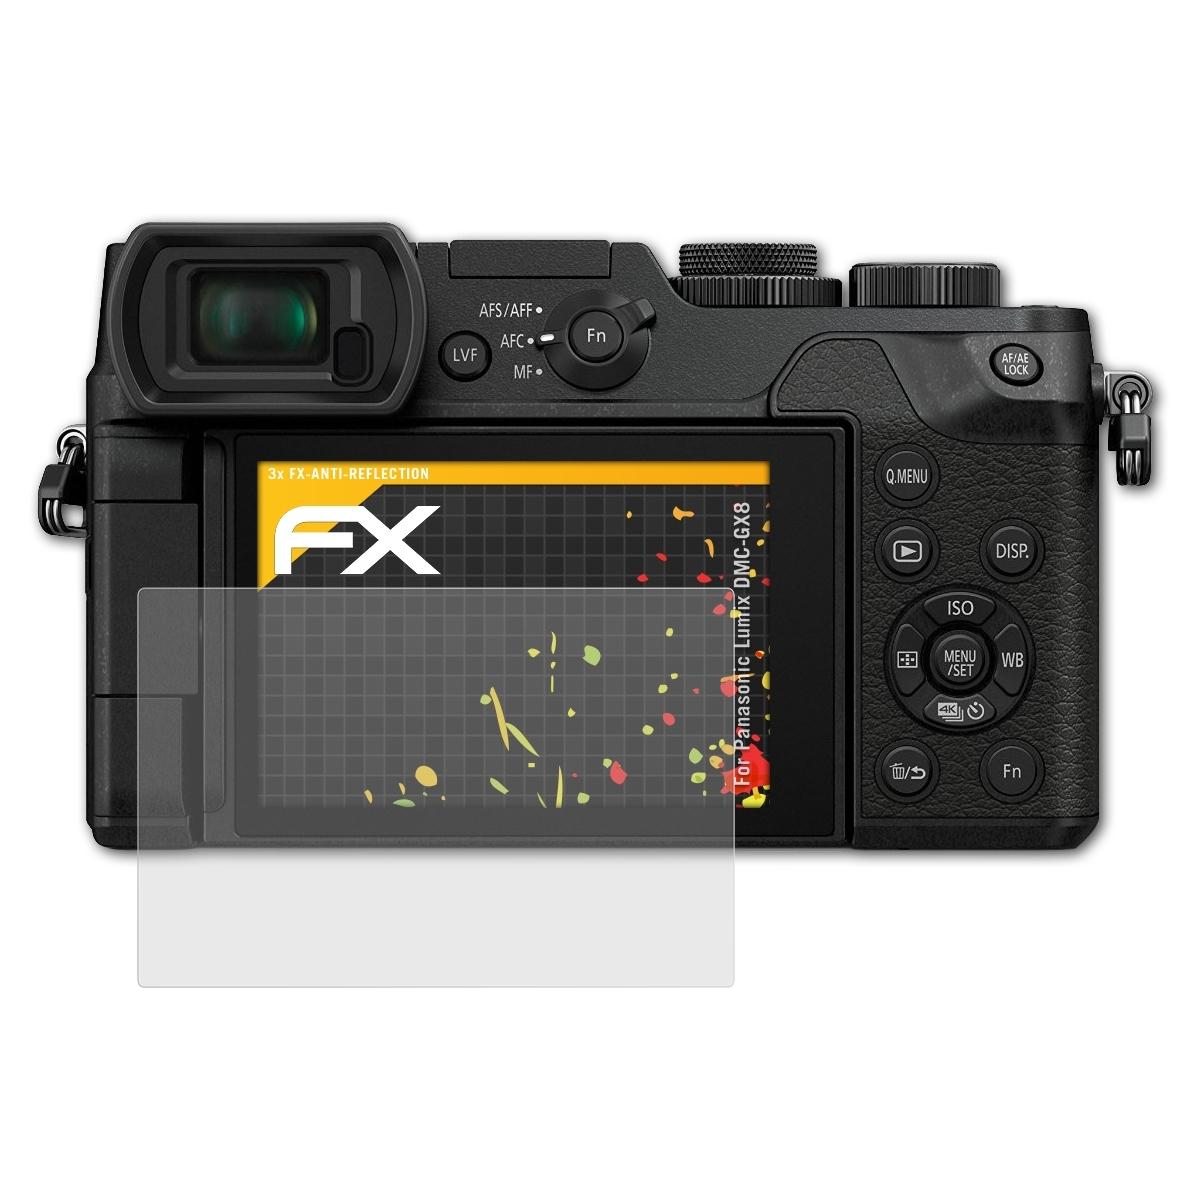 Displayschutz(für 3x DMC-GX8) FX-Antireflex Lumix ATFOLIX Panasonic